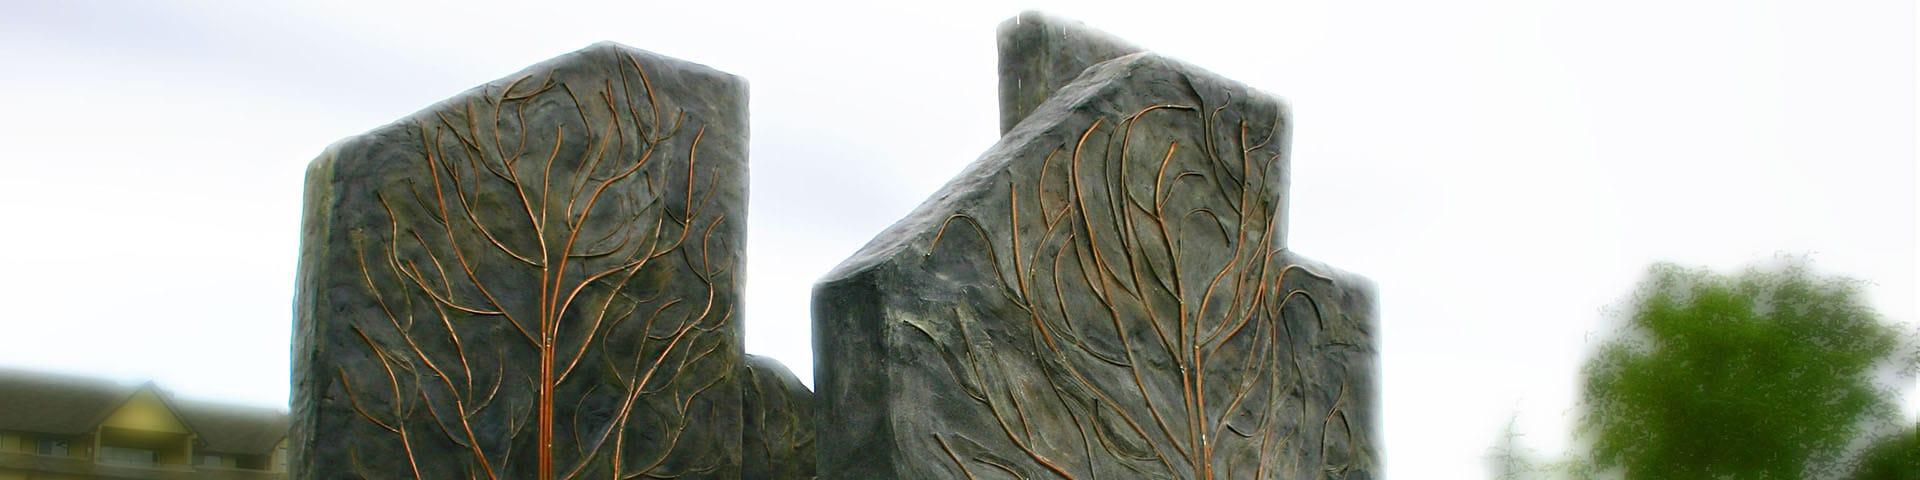 Kamloops Monument